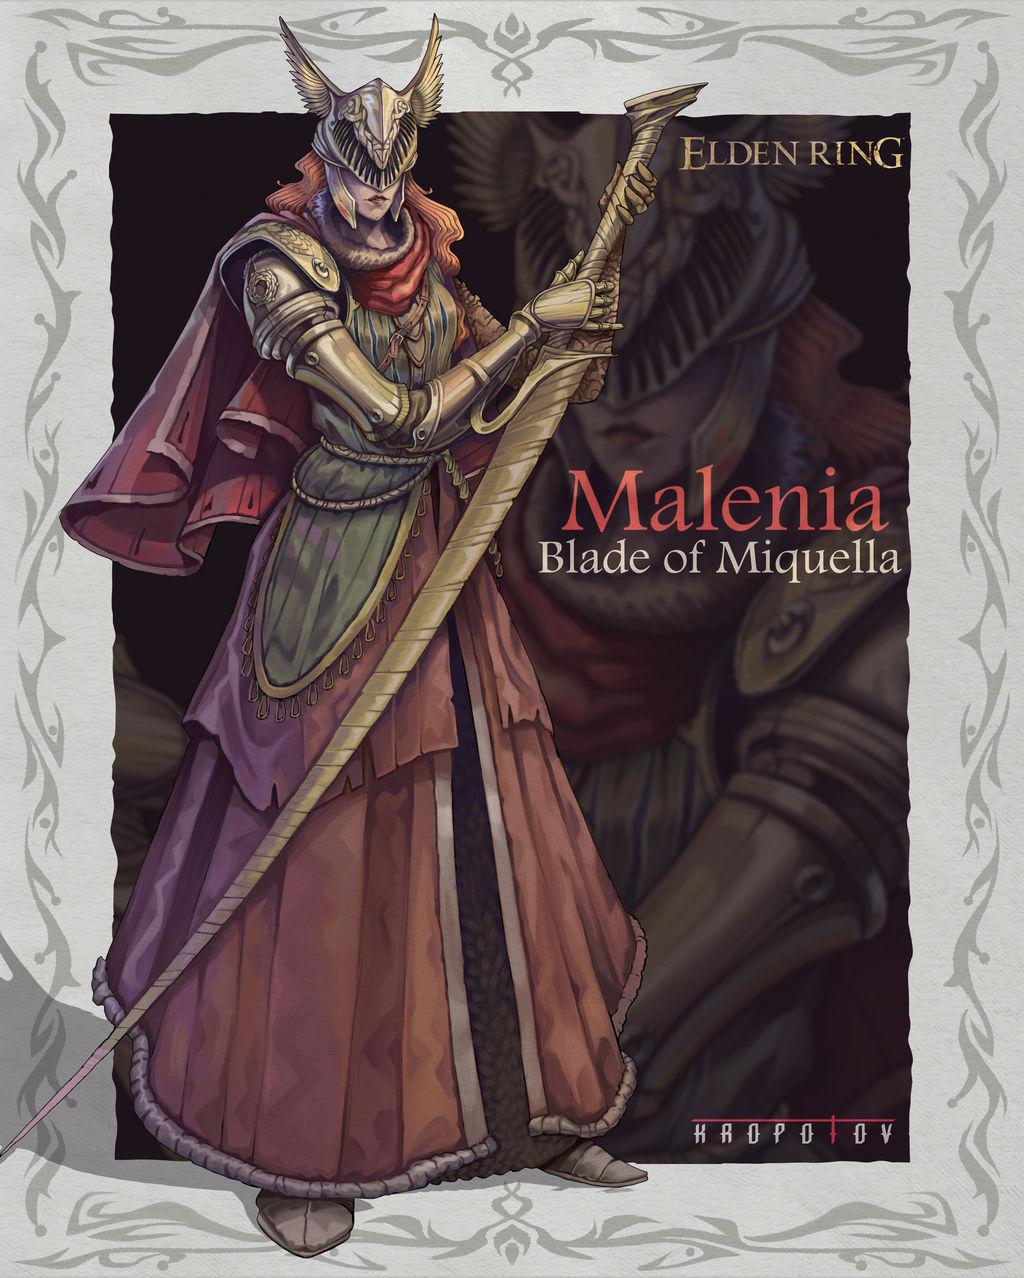 Elden Ring - Malenia Blade of Miquella by Kropotov on DeviantArt